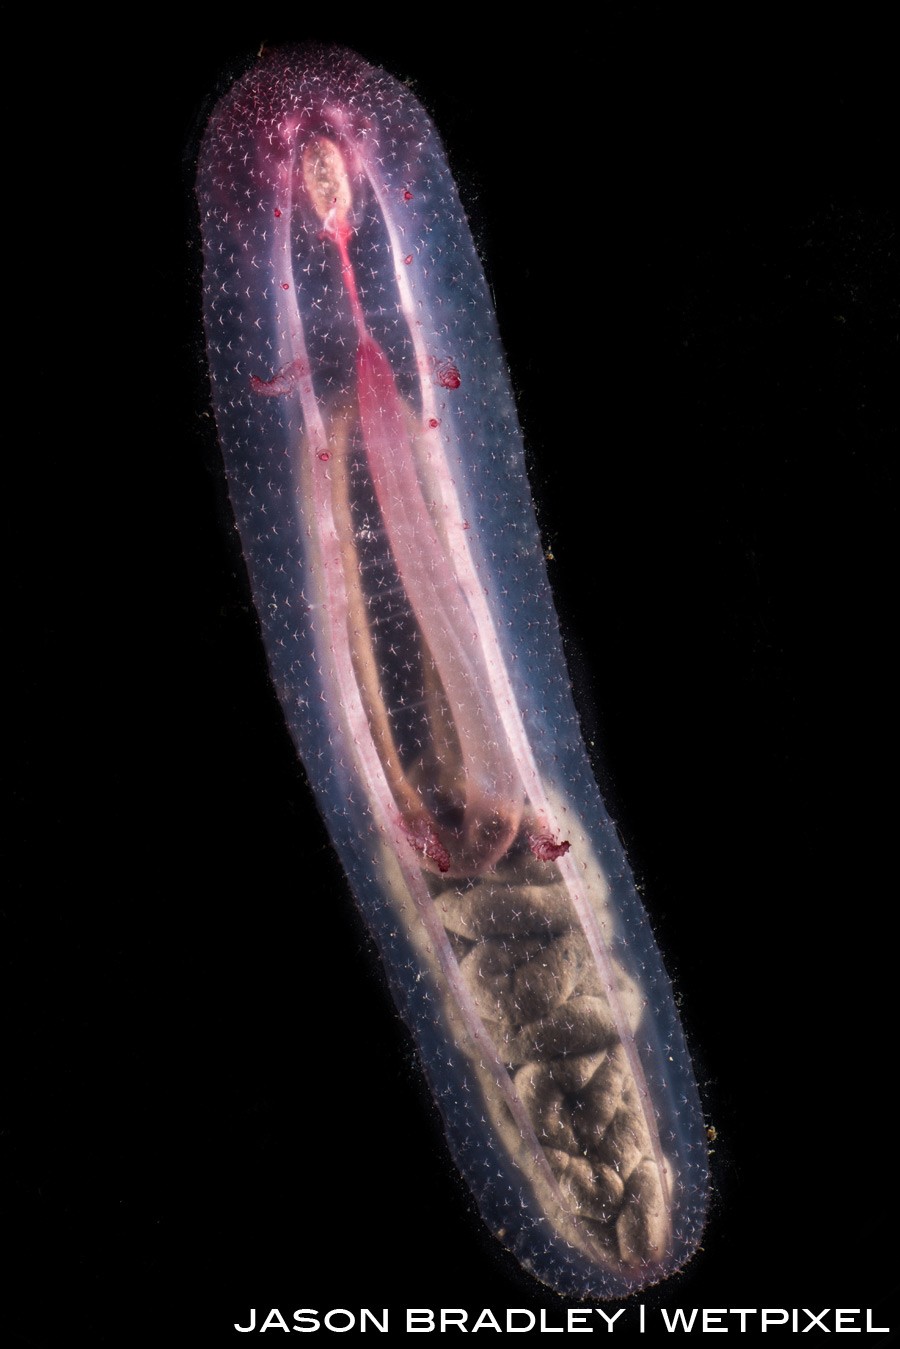 The a transluscent sea cucumber (*Holothuroidea*).